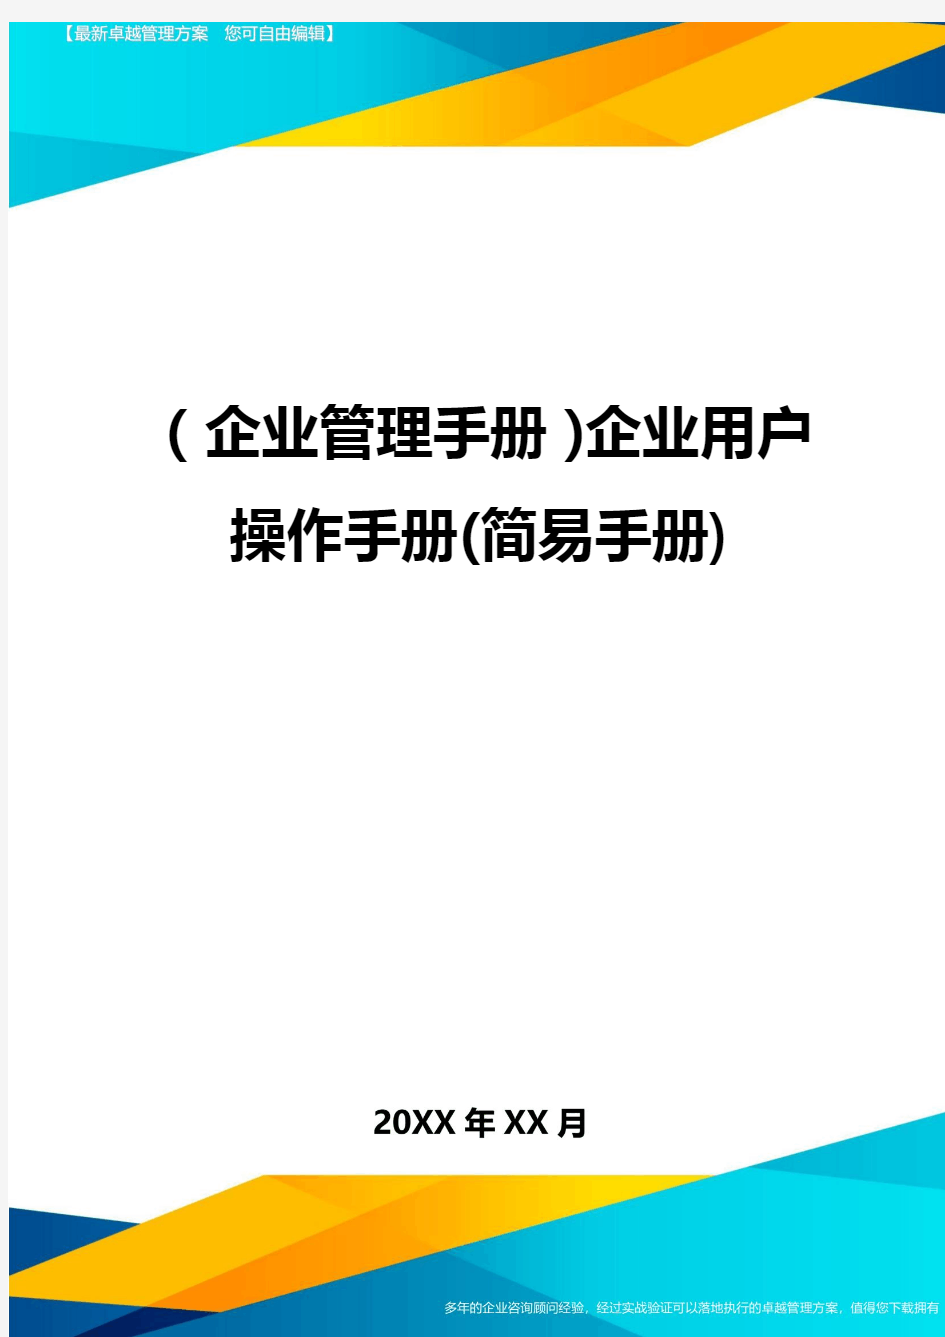 (企业管理手册)企业用户操作手册(简易手册)